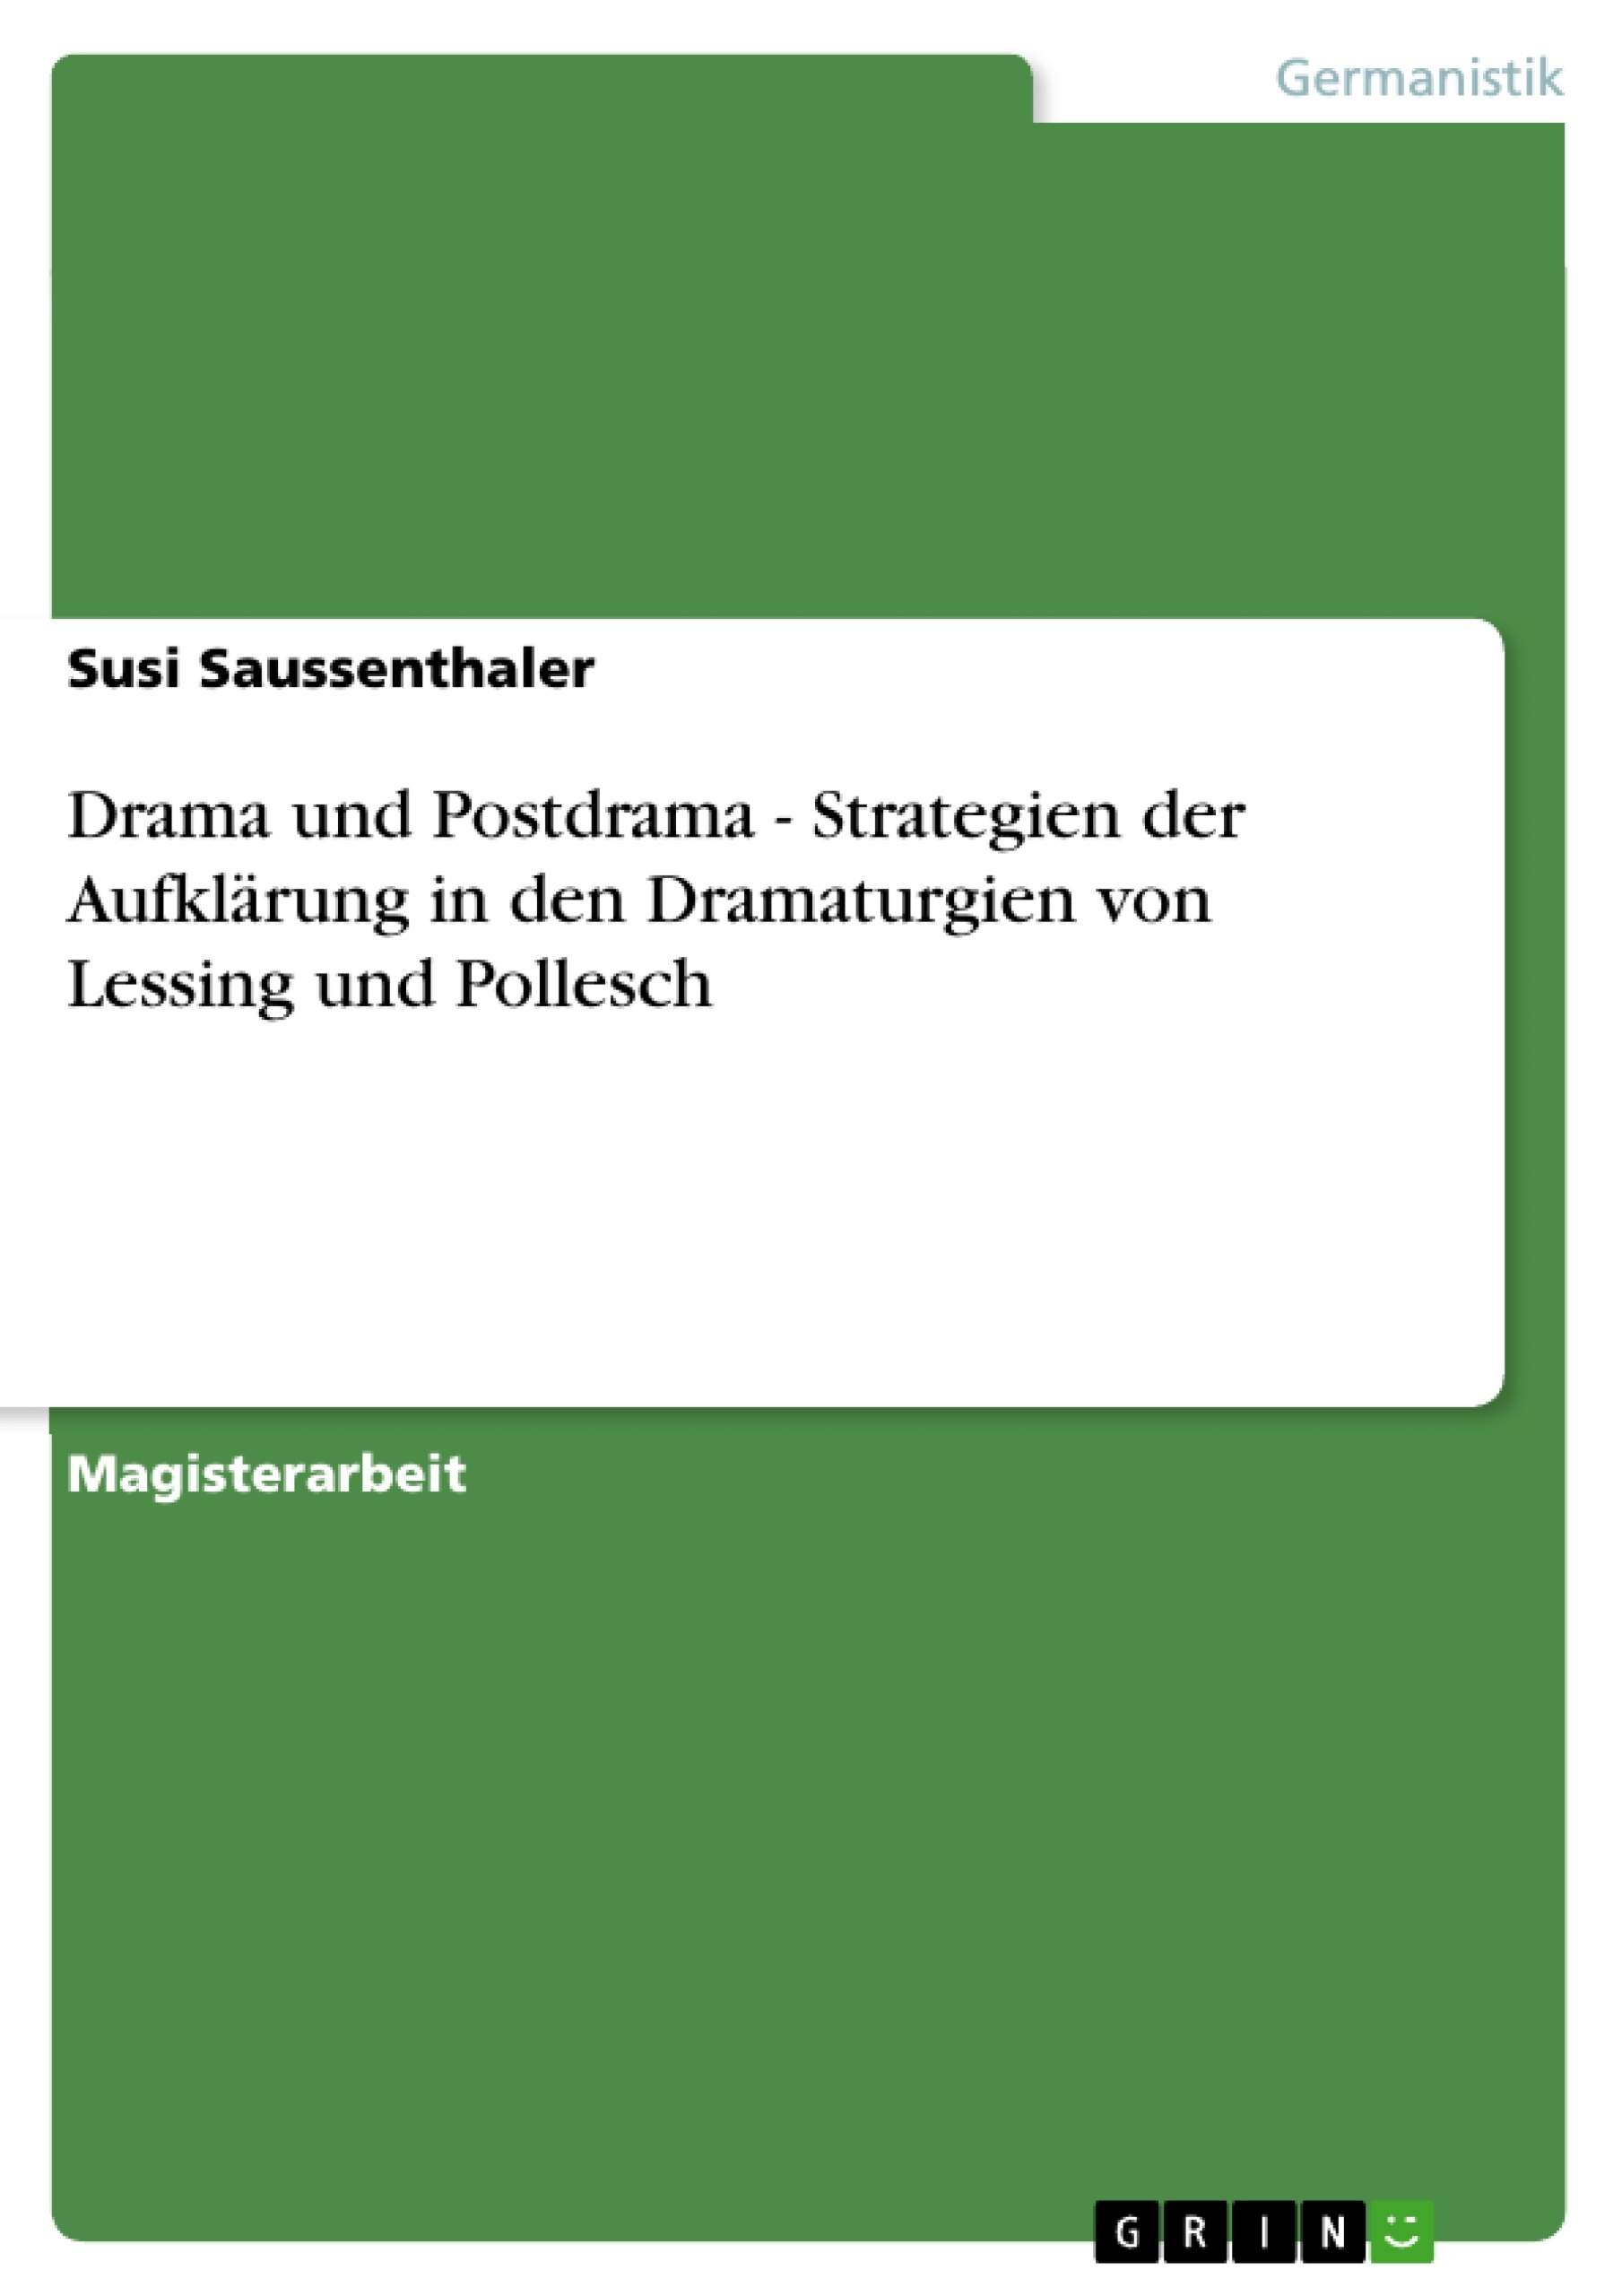 Title: Drama und Postdrama - Strategien der Aufklärung in den Dramaturgien von Lessing und Pollesch